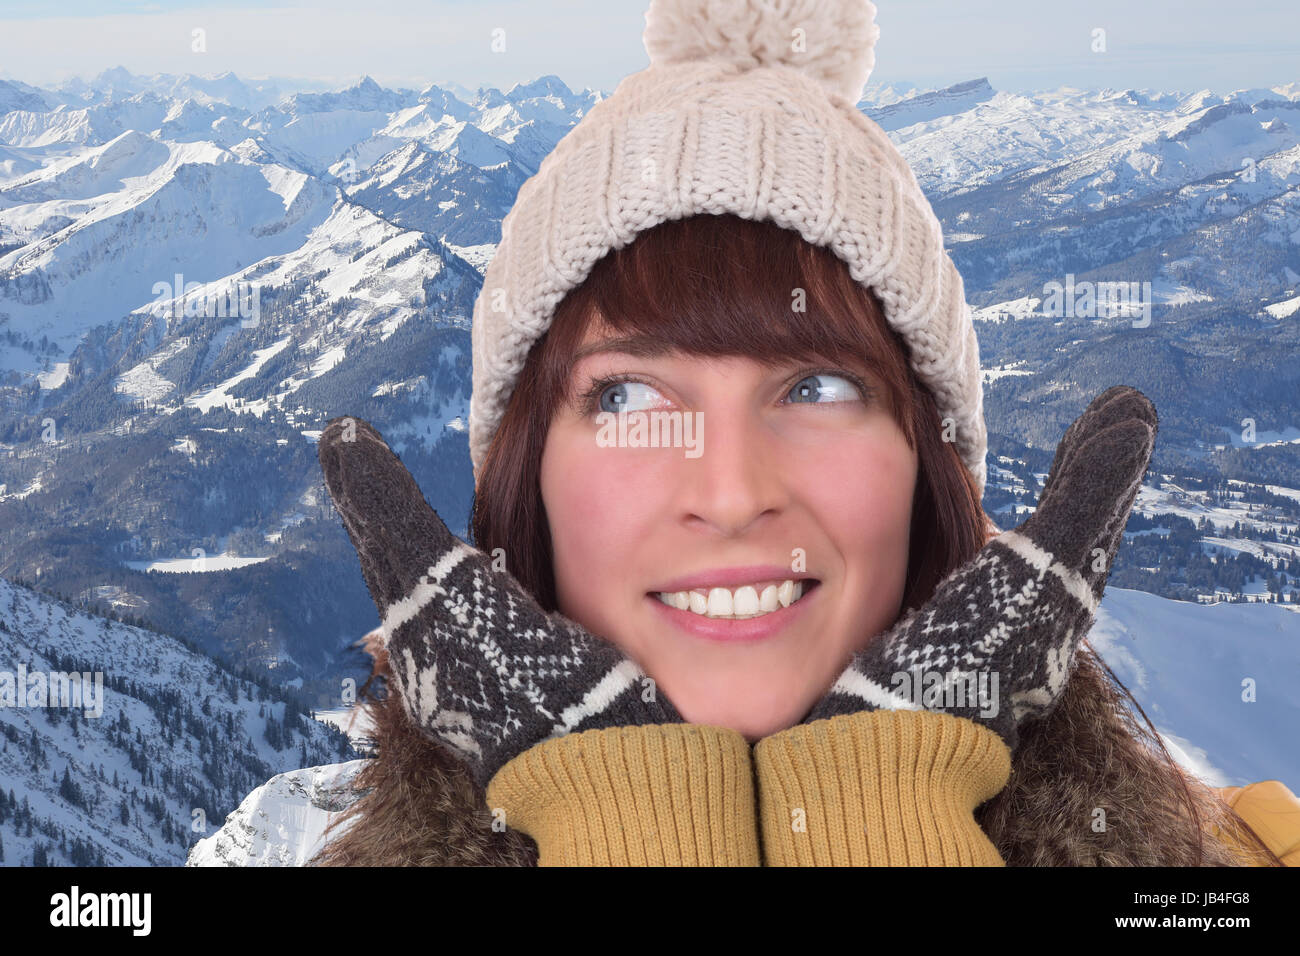 Portrait einer Frau im Winter mit Mütze und Handschuhen in den Bergen Stock Photo